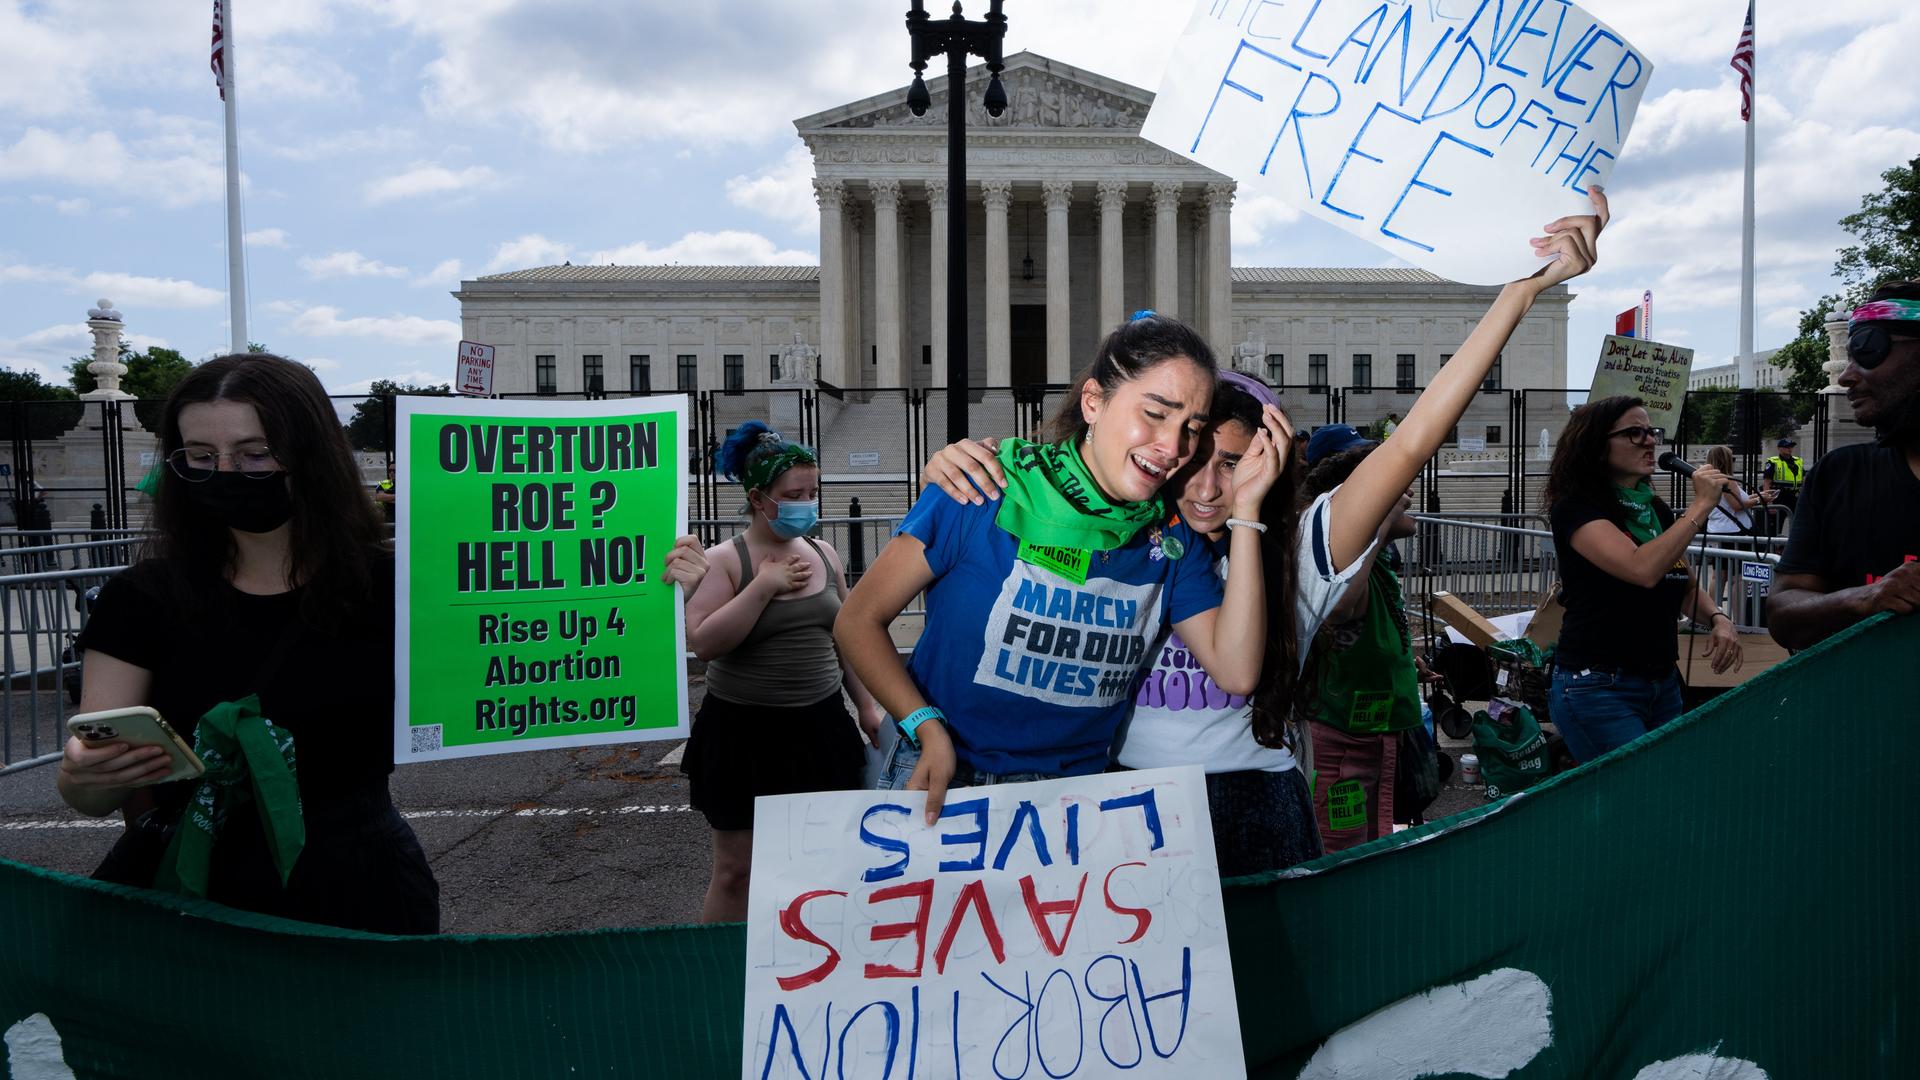 Protestierende weinende Mädchen in Washington halten Schilder: "We were never the land of the free" und "Abortion saves lives", nachdem der oberste Gerichtshof in den USA das Recht auf Abtreibung gekippt hat, 24. Juni 2022.